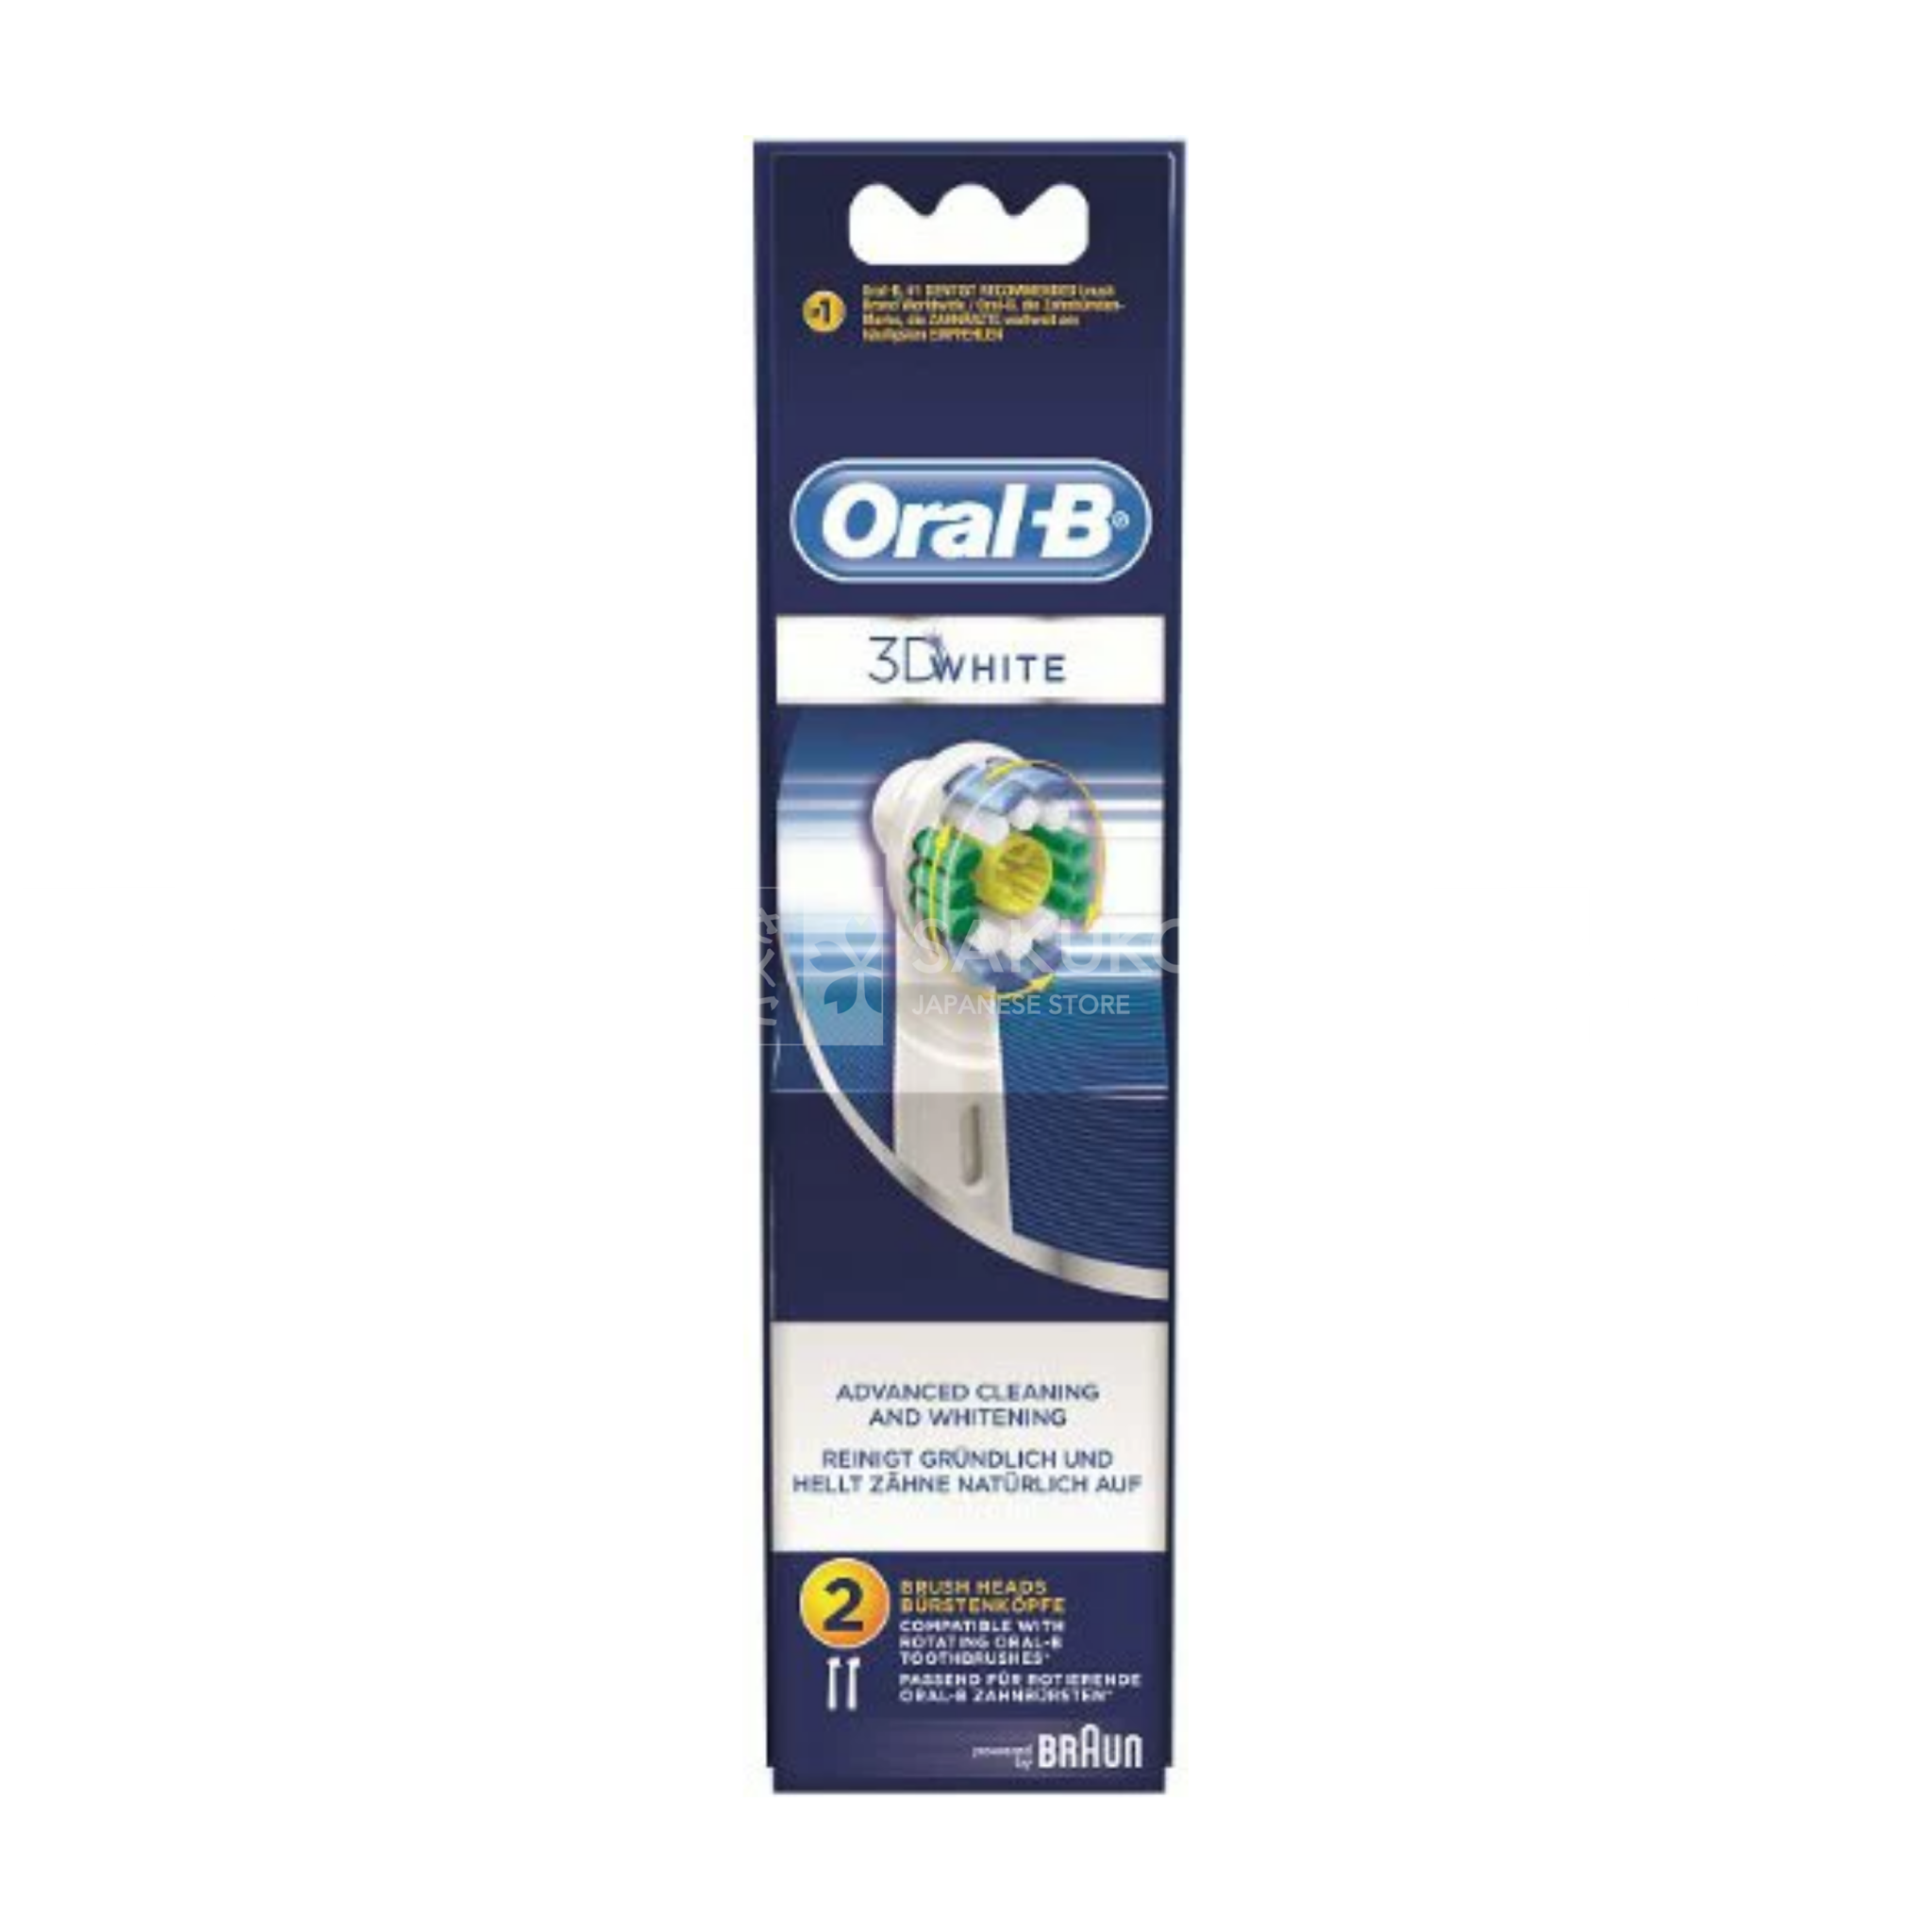  P&G- Đầu bàn chải OralB 3D White trắng răng 2c 